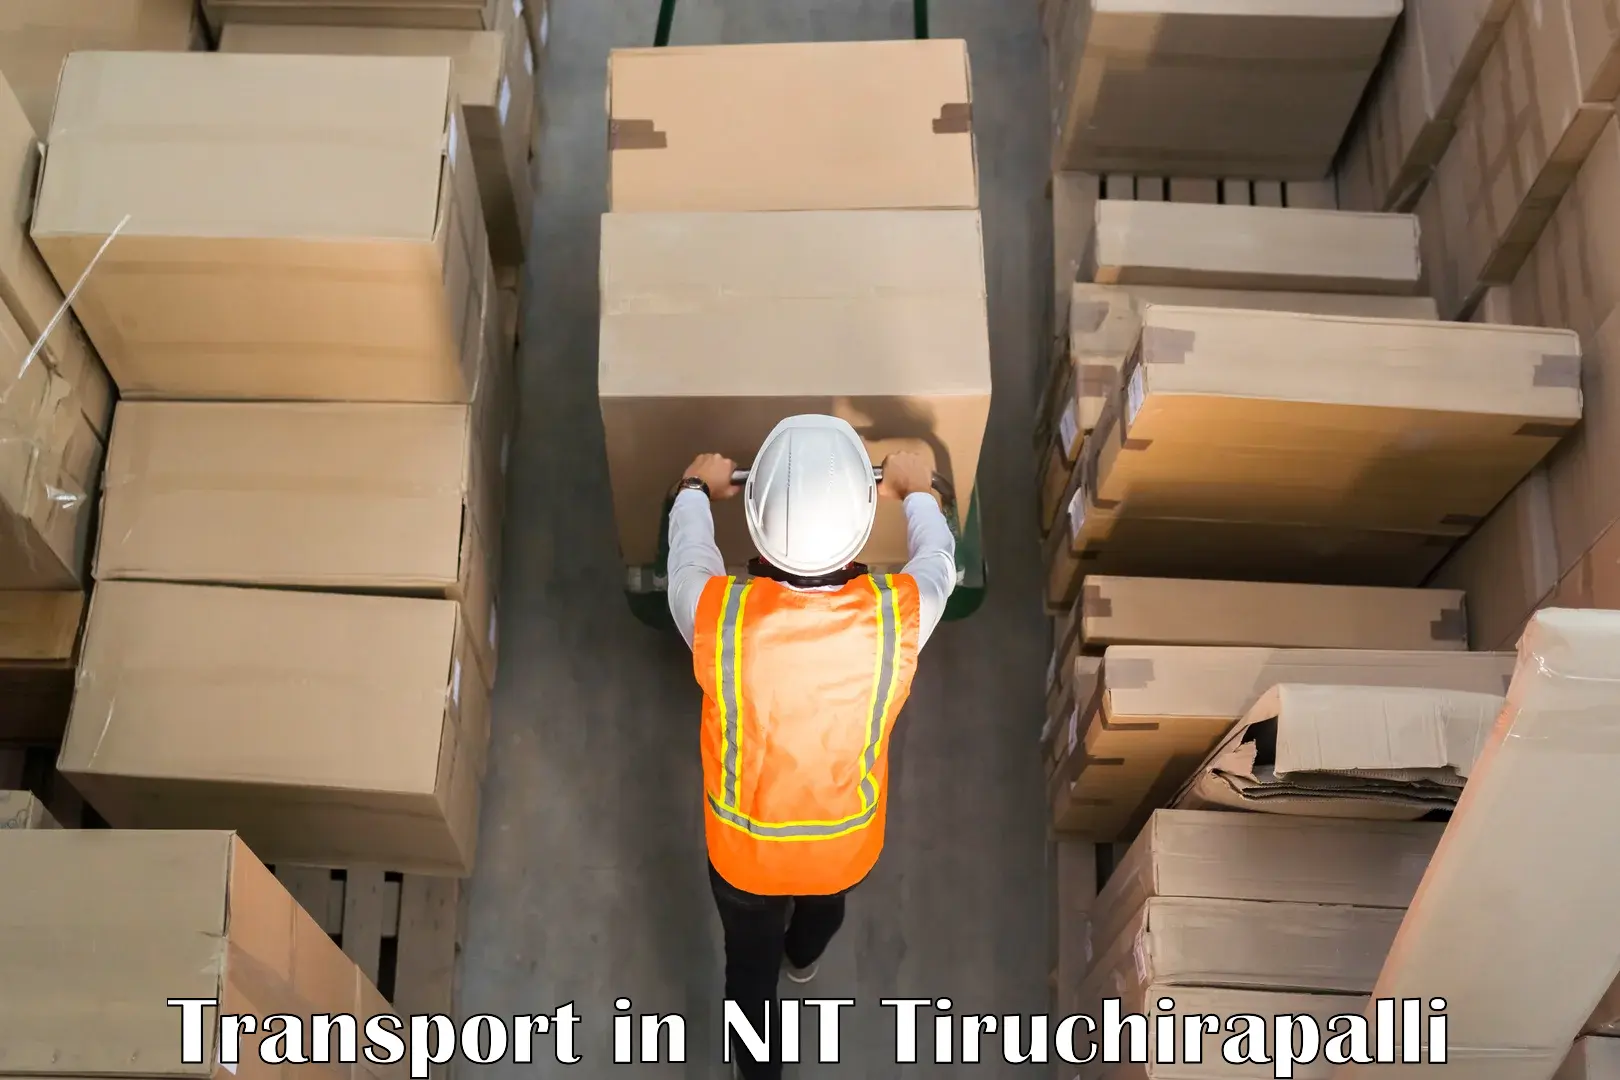 Goods transport services in NIT Tiruchirapalli